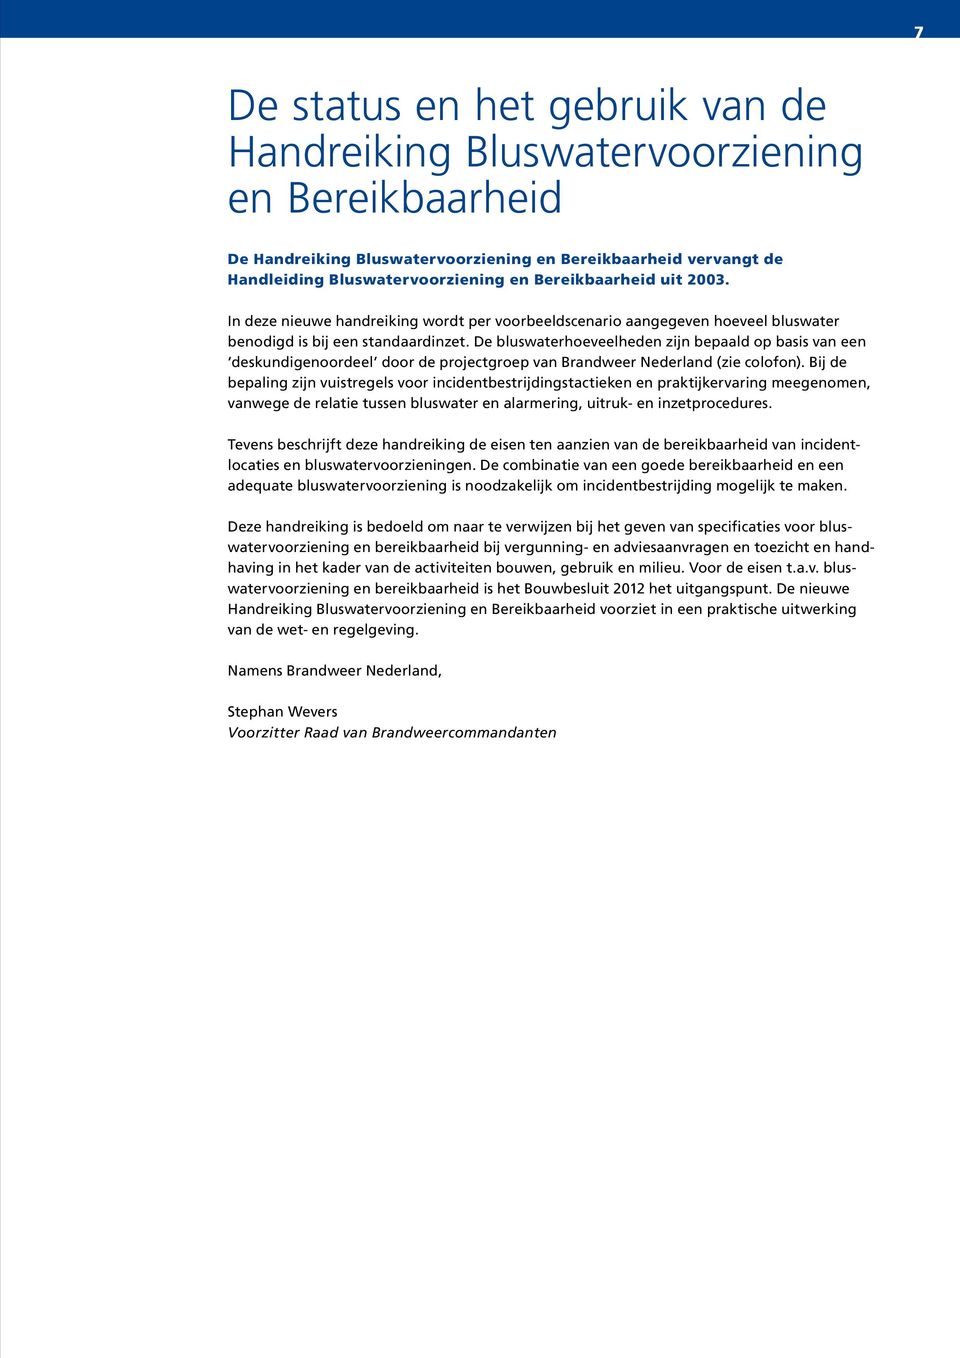 De bluswaterhoeveelheden zijn bepaald op basis van een deskundigenoordeel door de projectgroep van Brandweer Nederland (zie colofon).